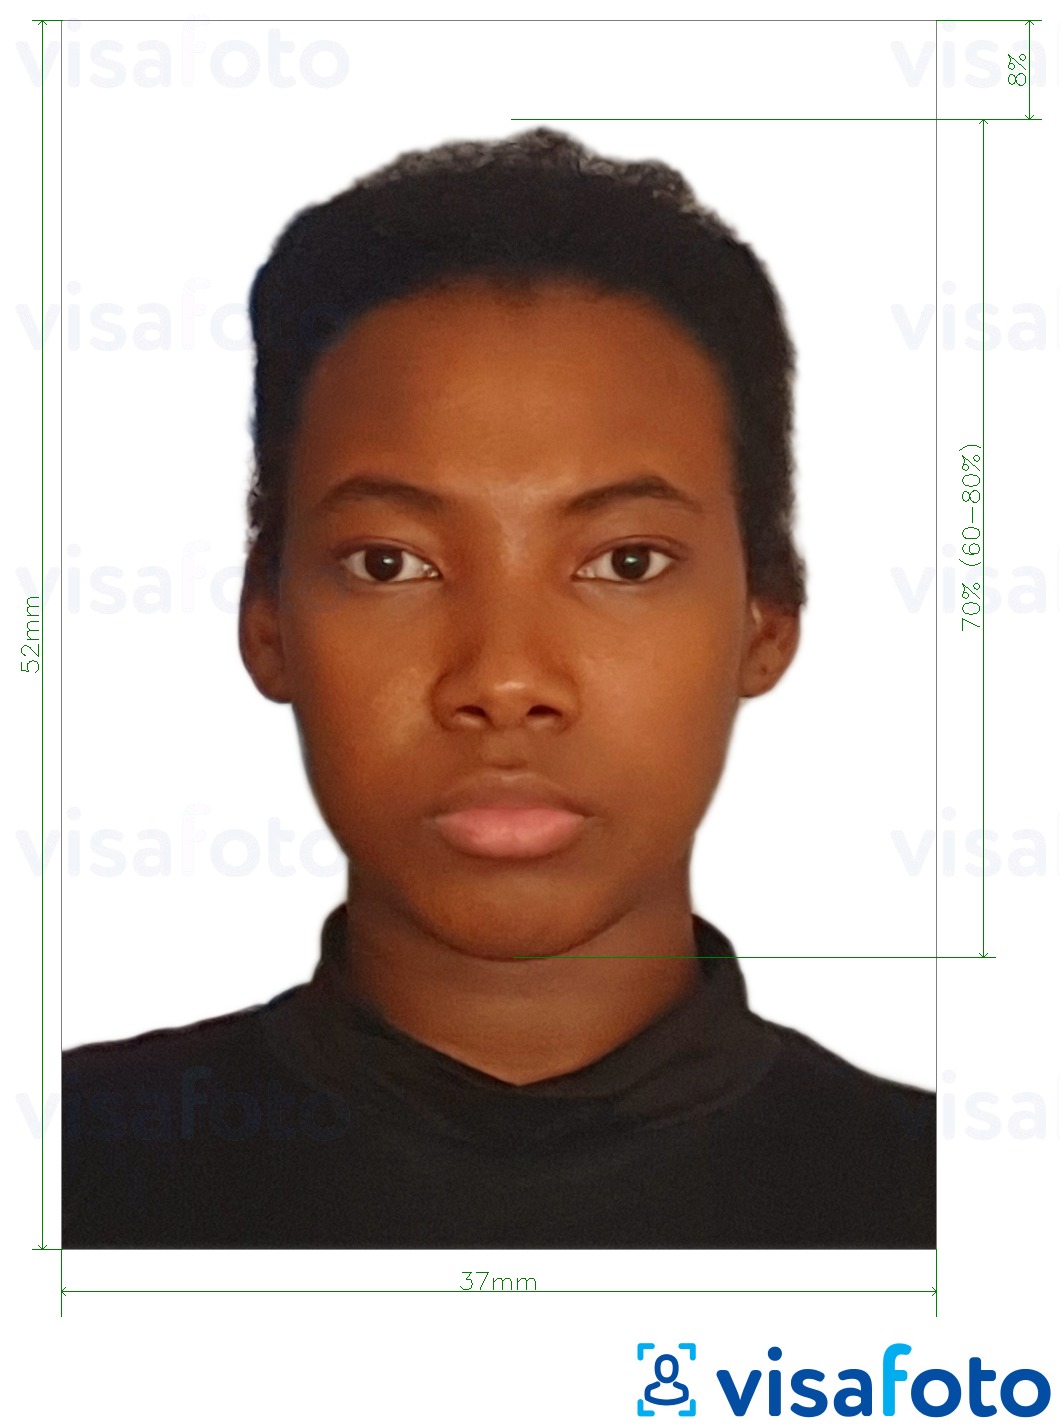 Voorbeeld van foto voor Namibië visum 37x52mm (3,7x5,2 cm) met exacte maatspecificatie